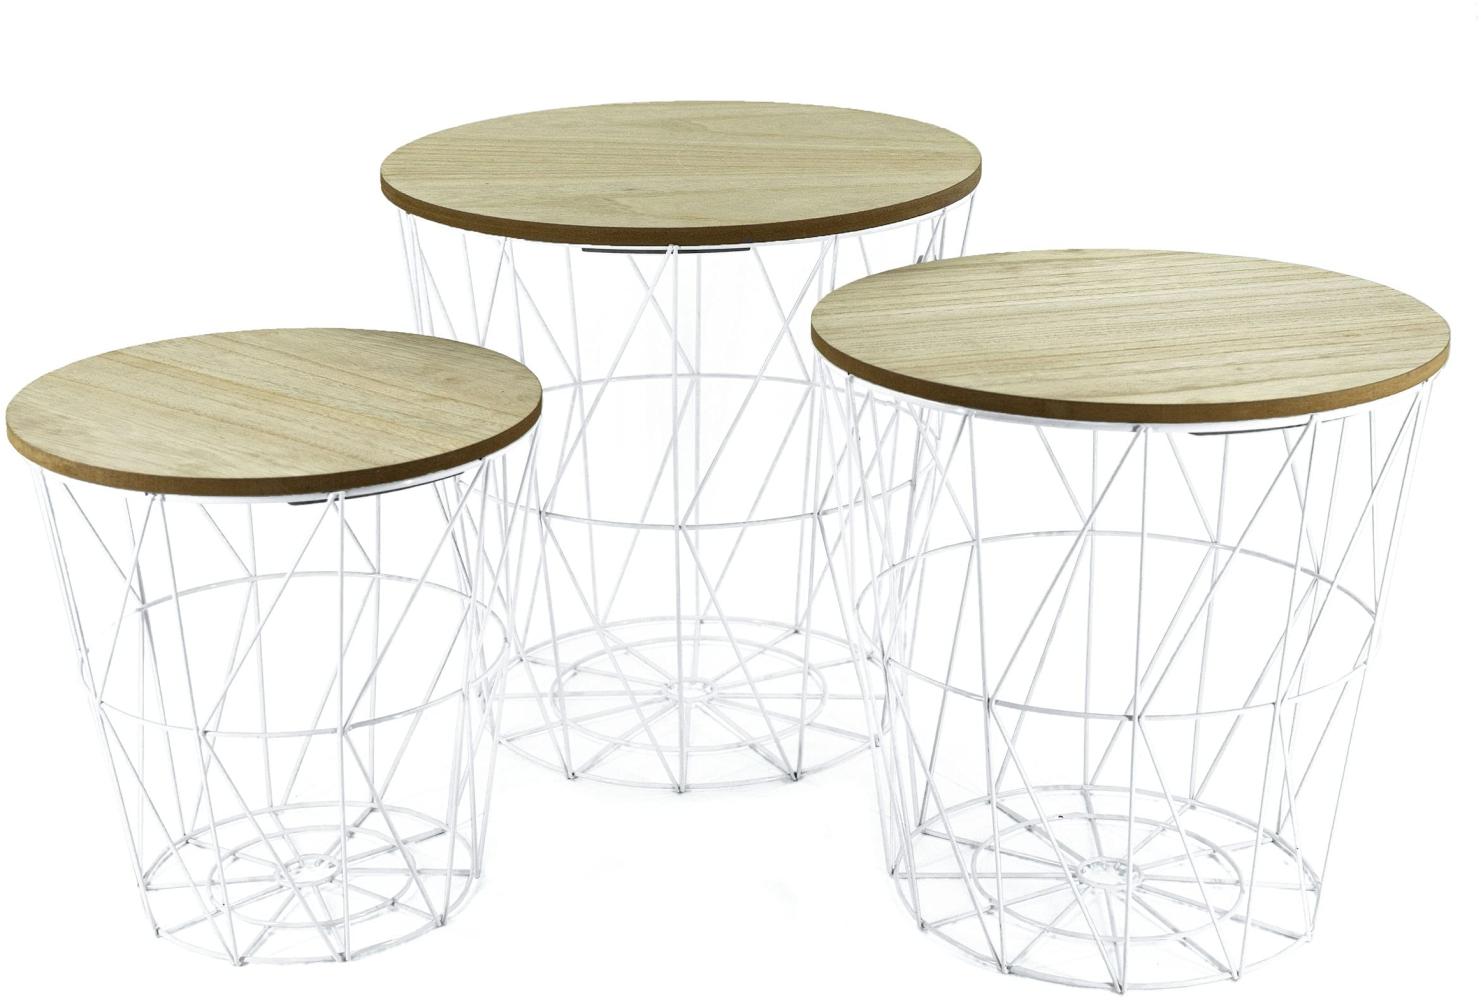 Metall Beistelltisch mit Stauraum weiß/helle Platten - 3er Set - Wohnzimmer Tisch mit Abnehmbarer Holz Platte Metallkorb Sofatisch Couchtisch Bild 1